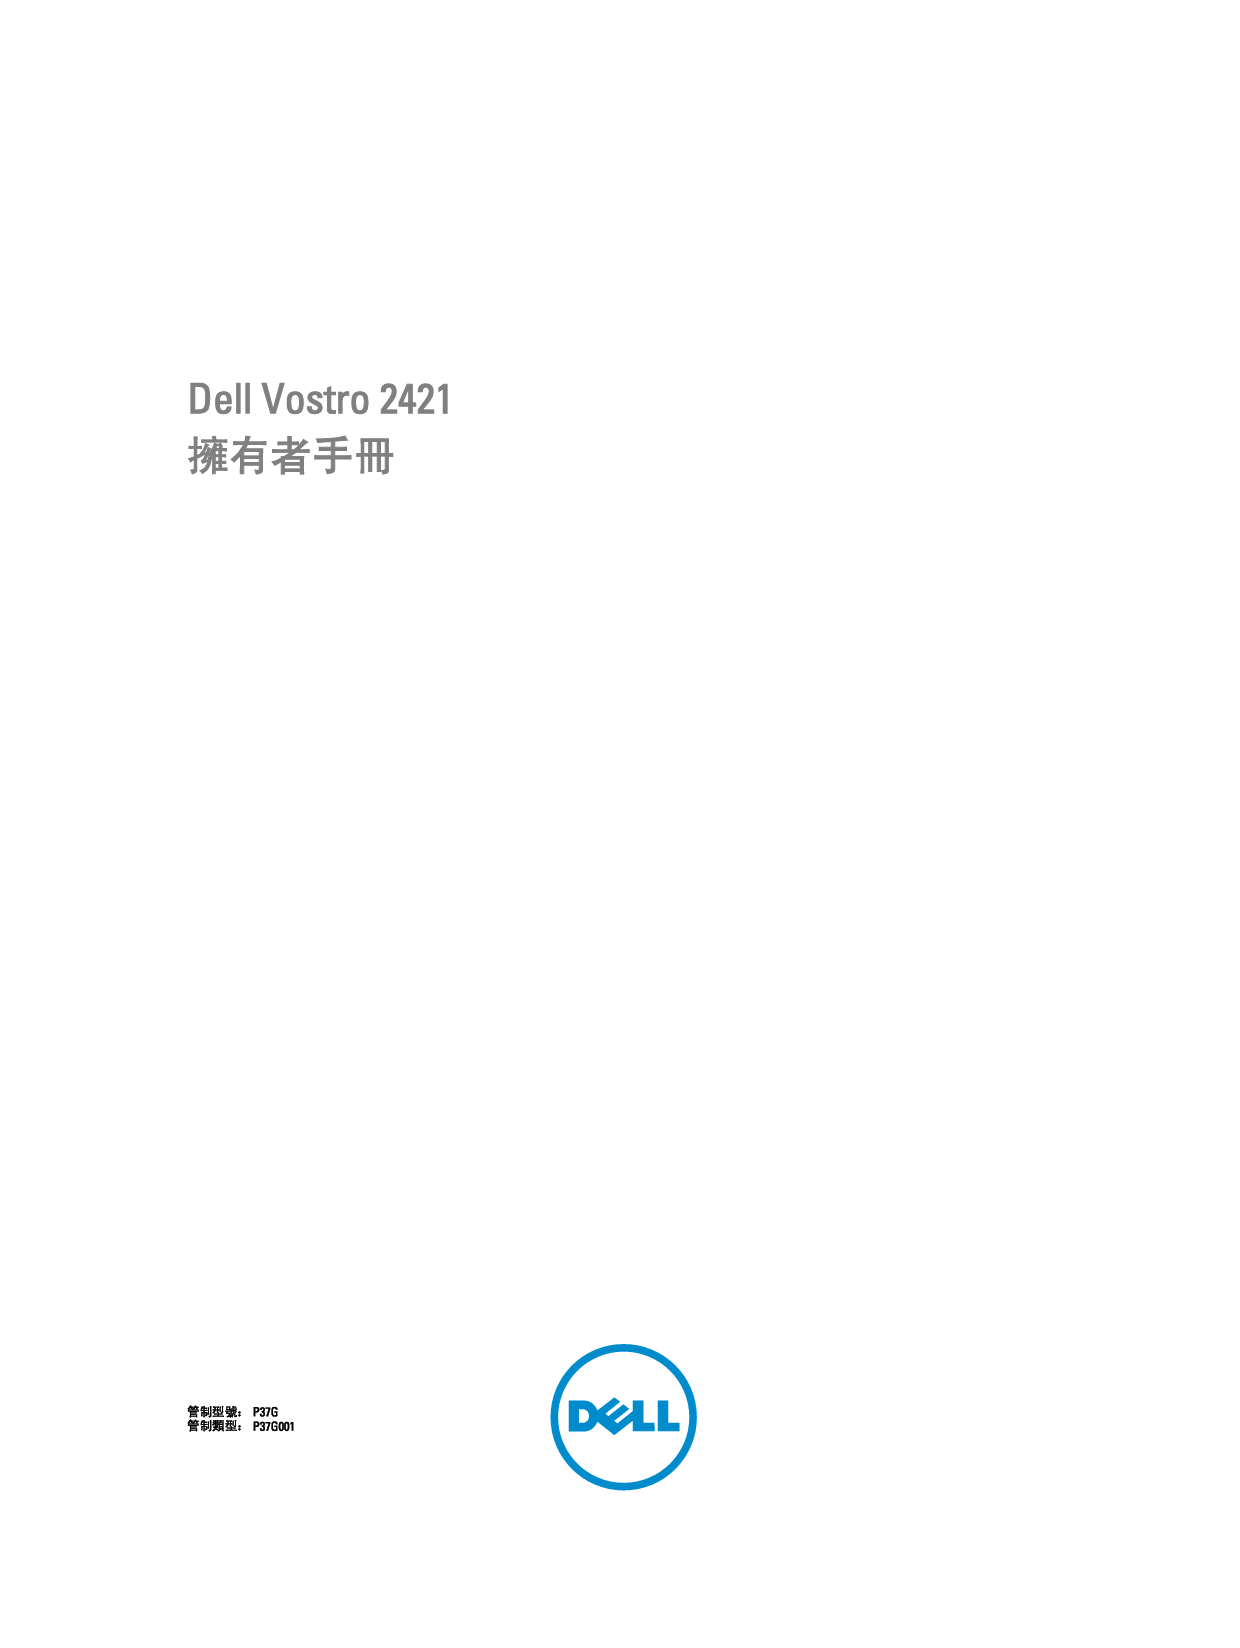 戴尔 Dell Vostro 2421 繁体 用户手册 封面